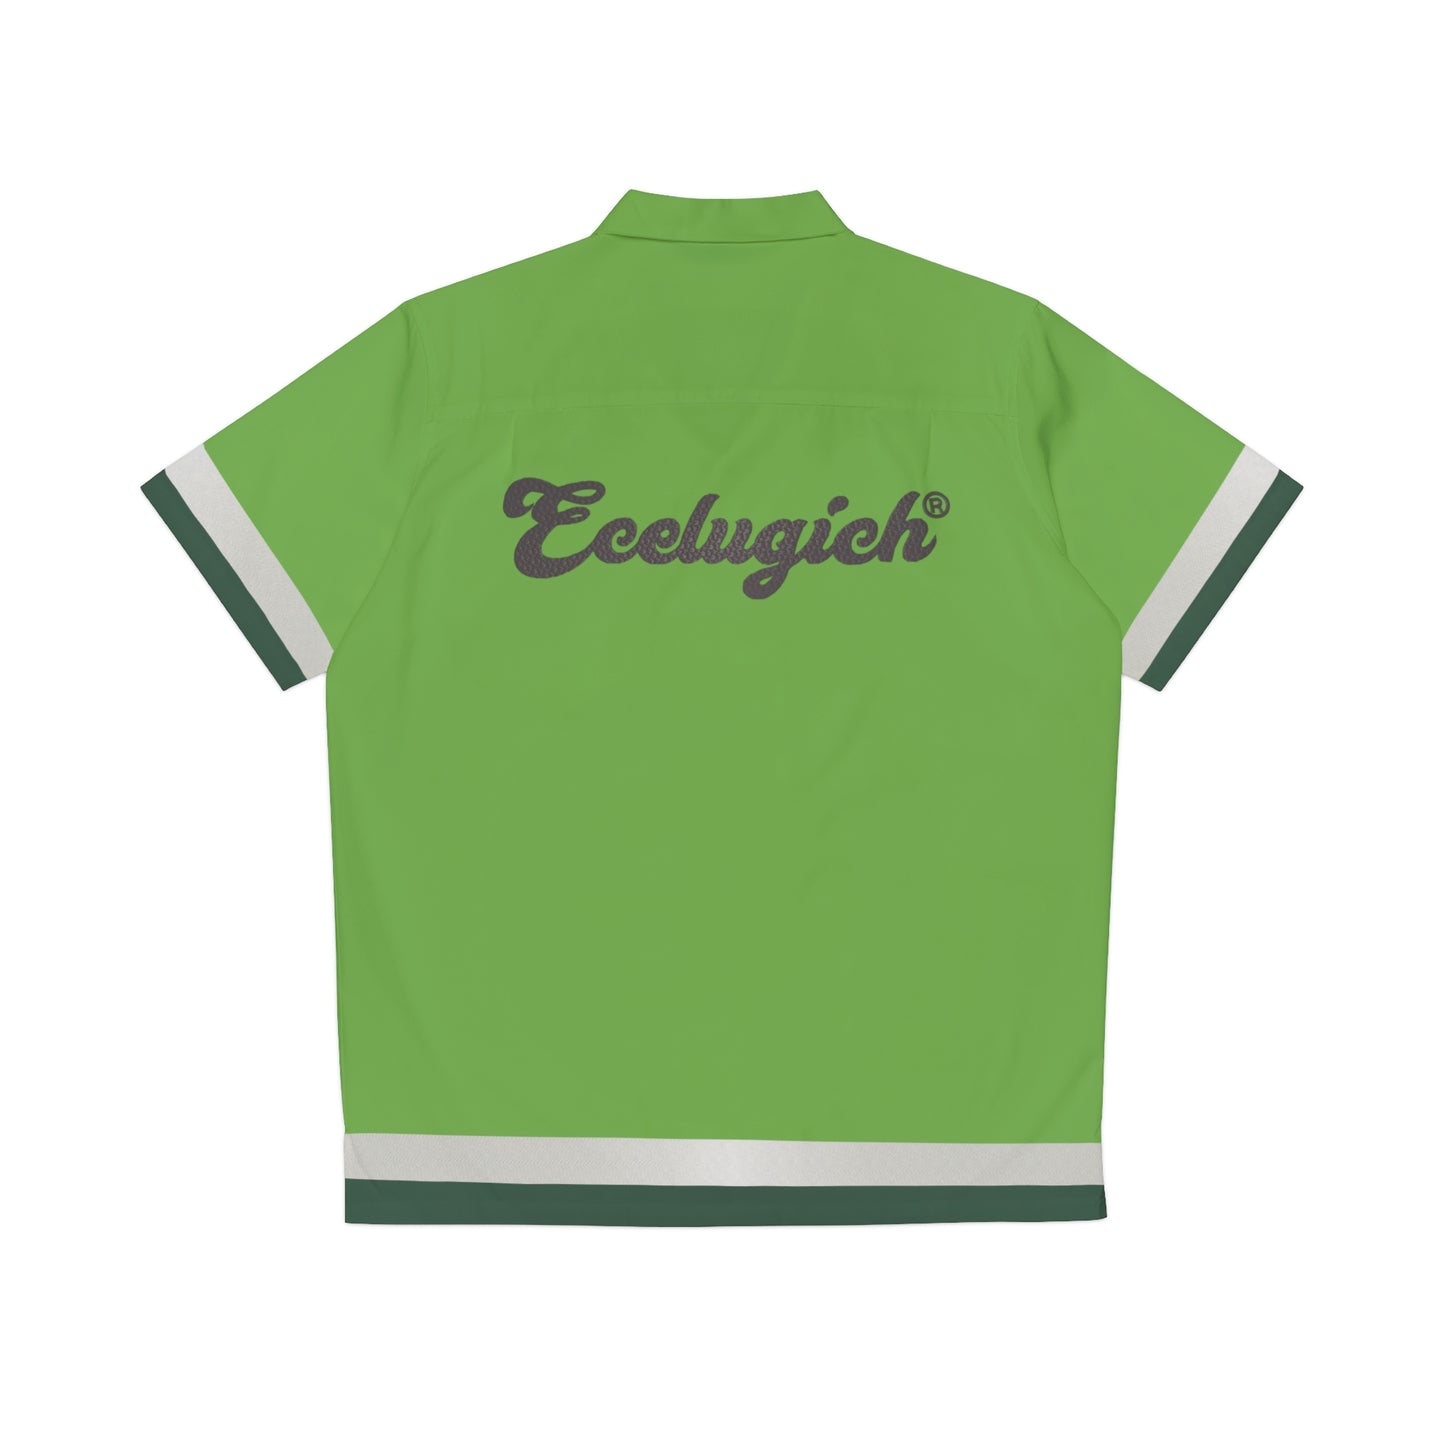 Ecelugich Men's Shirt